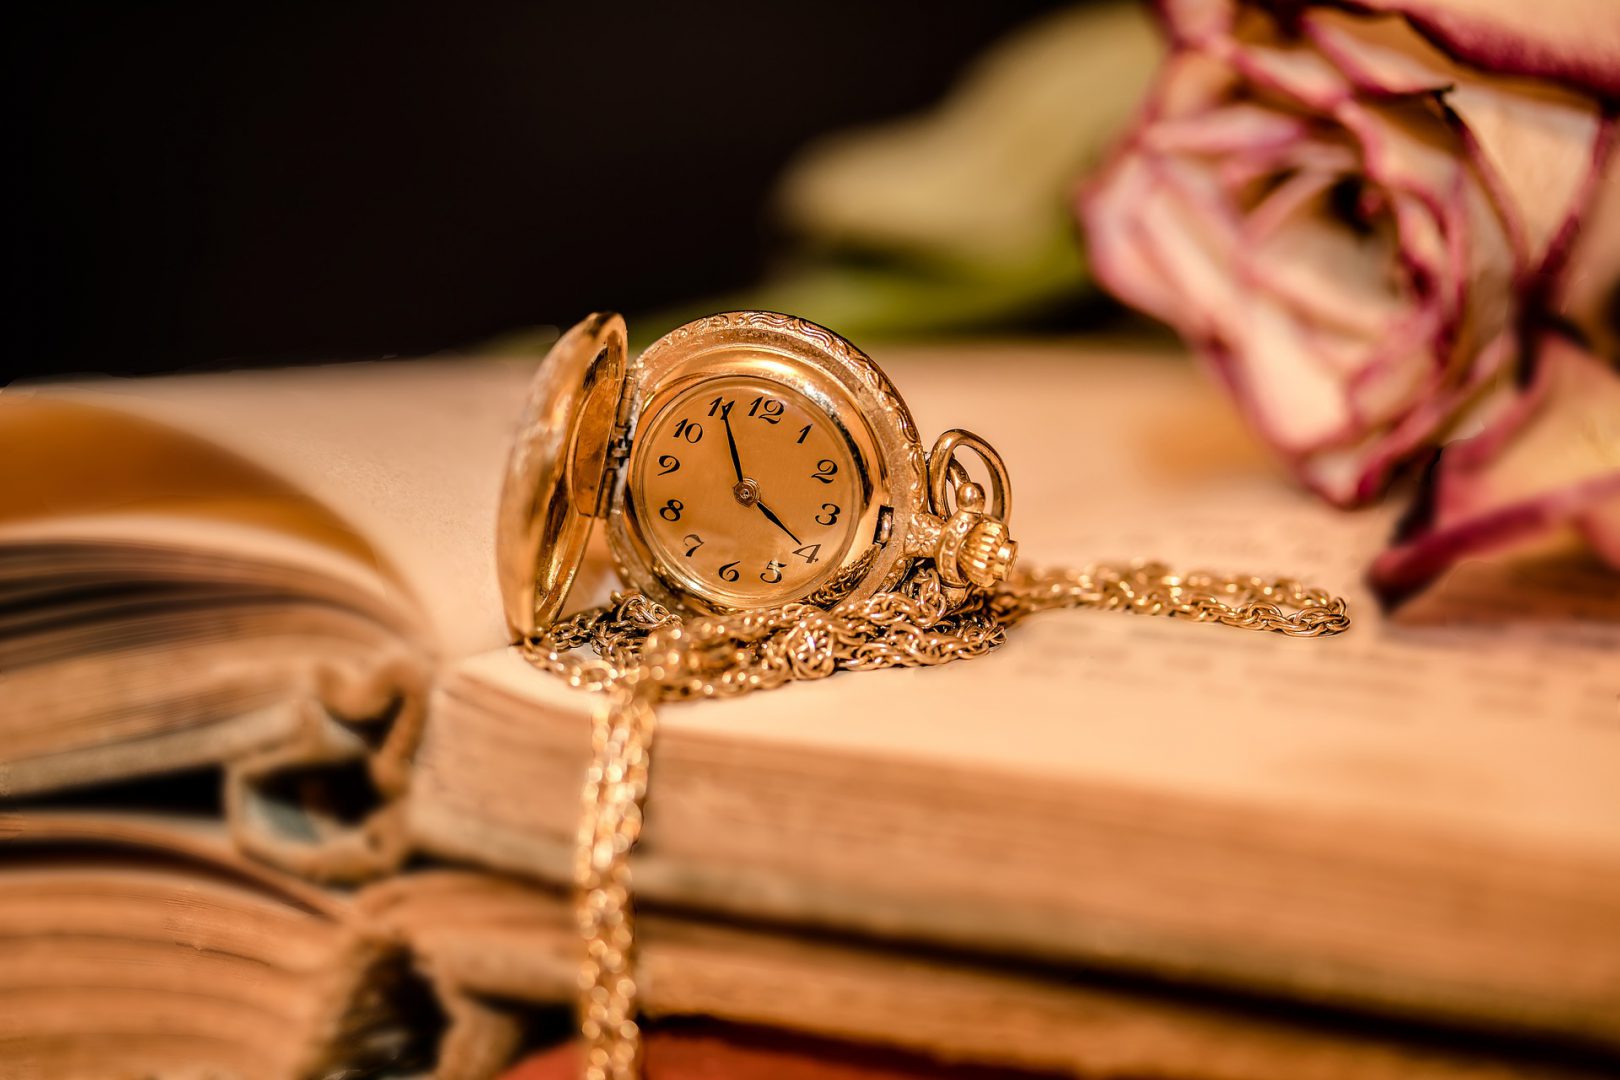 Zegarek leżący na książce z różą w tle